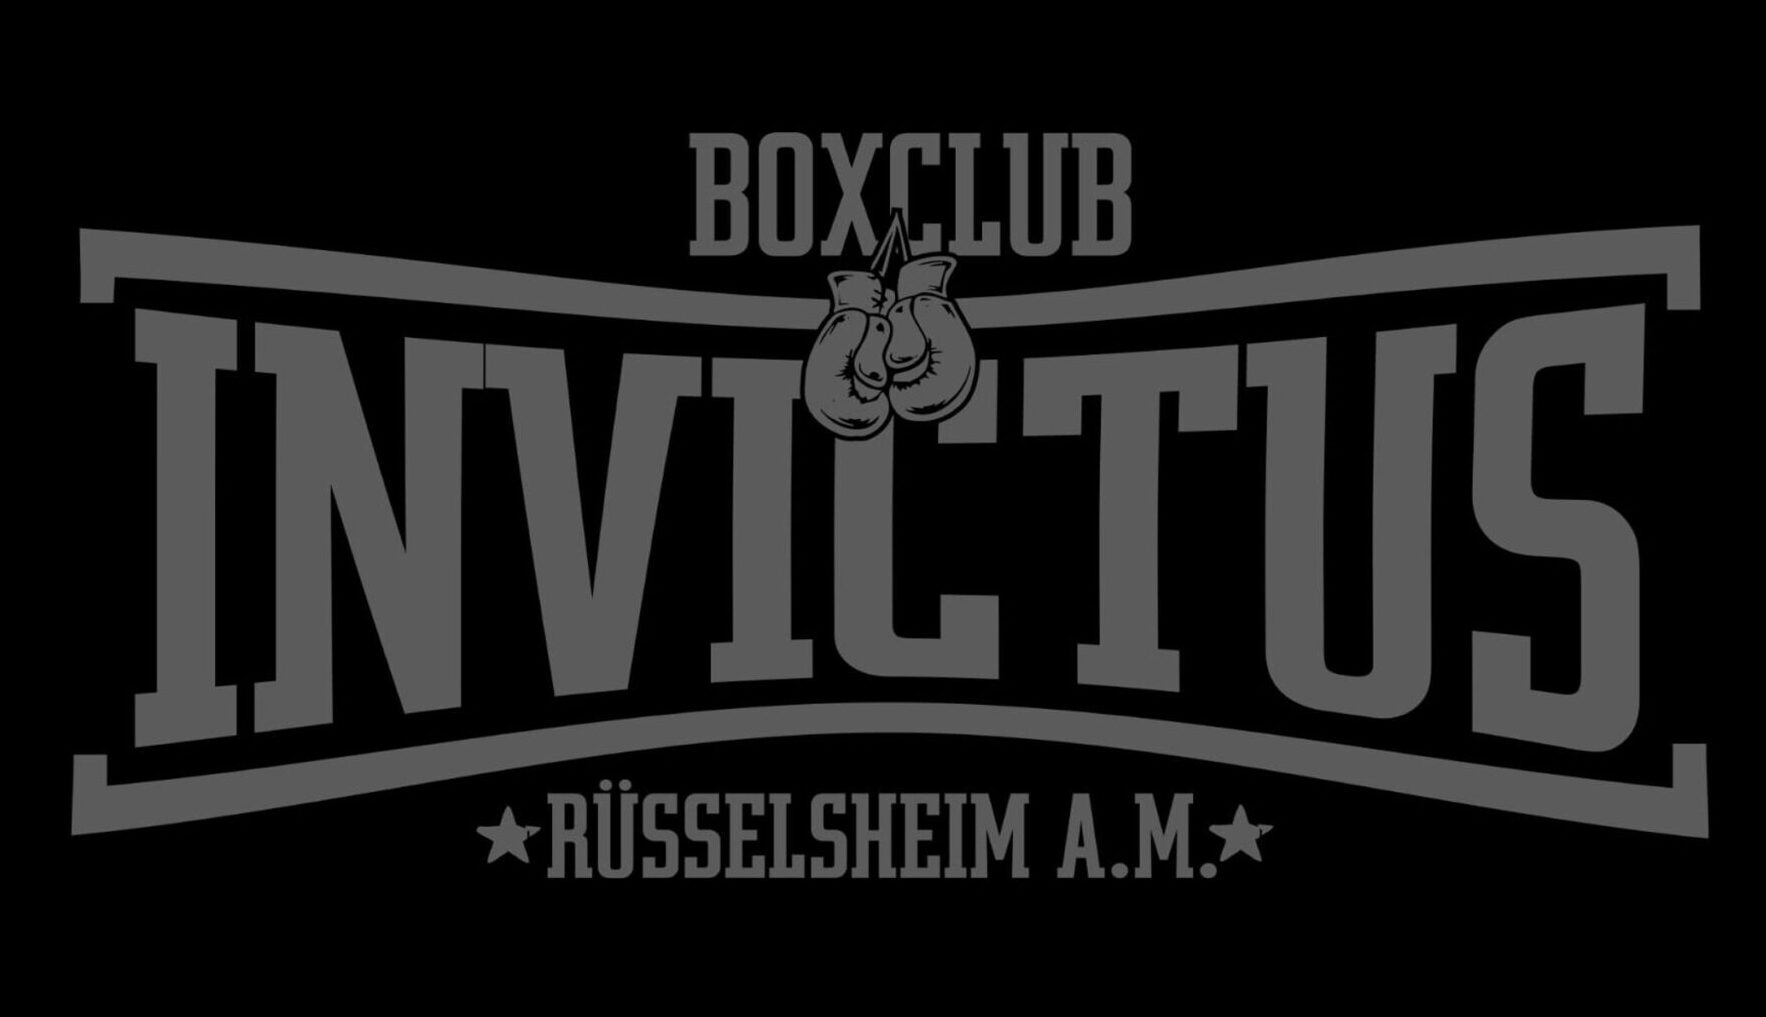 Invictus Boxclub Rüsselsheim am Main